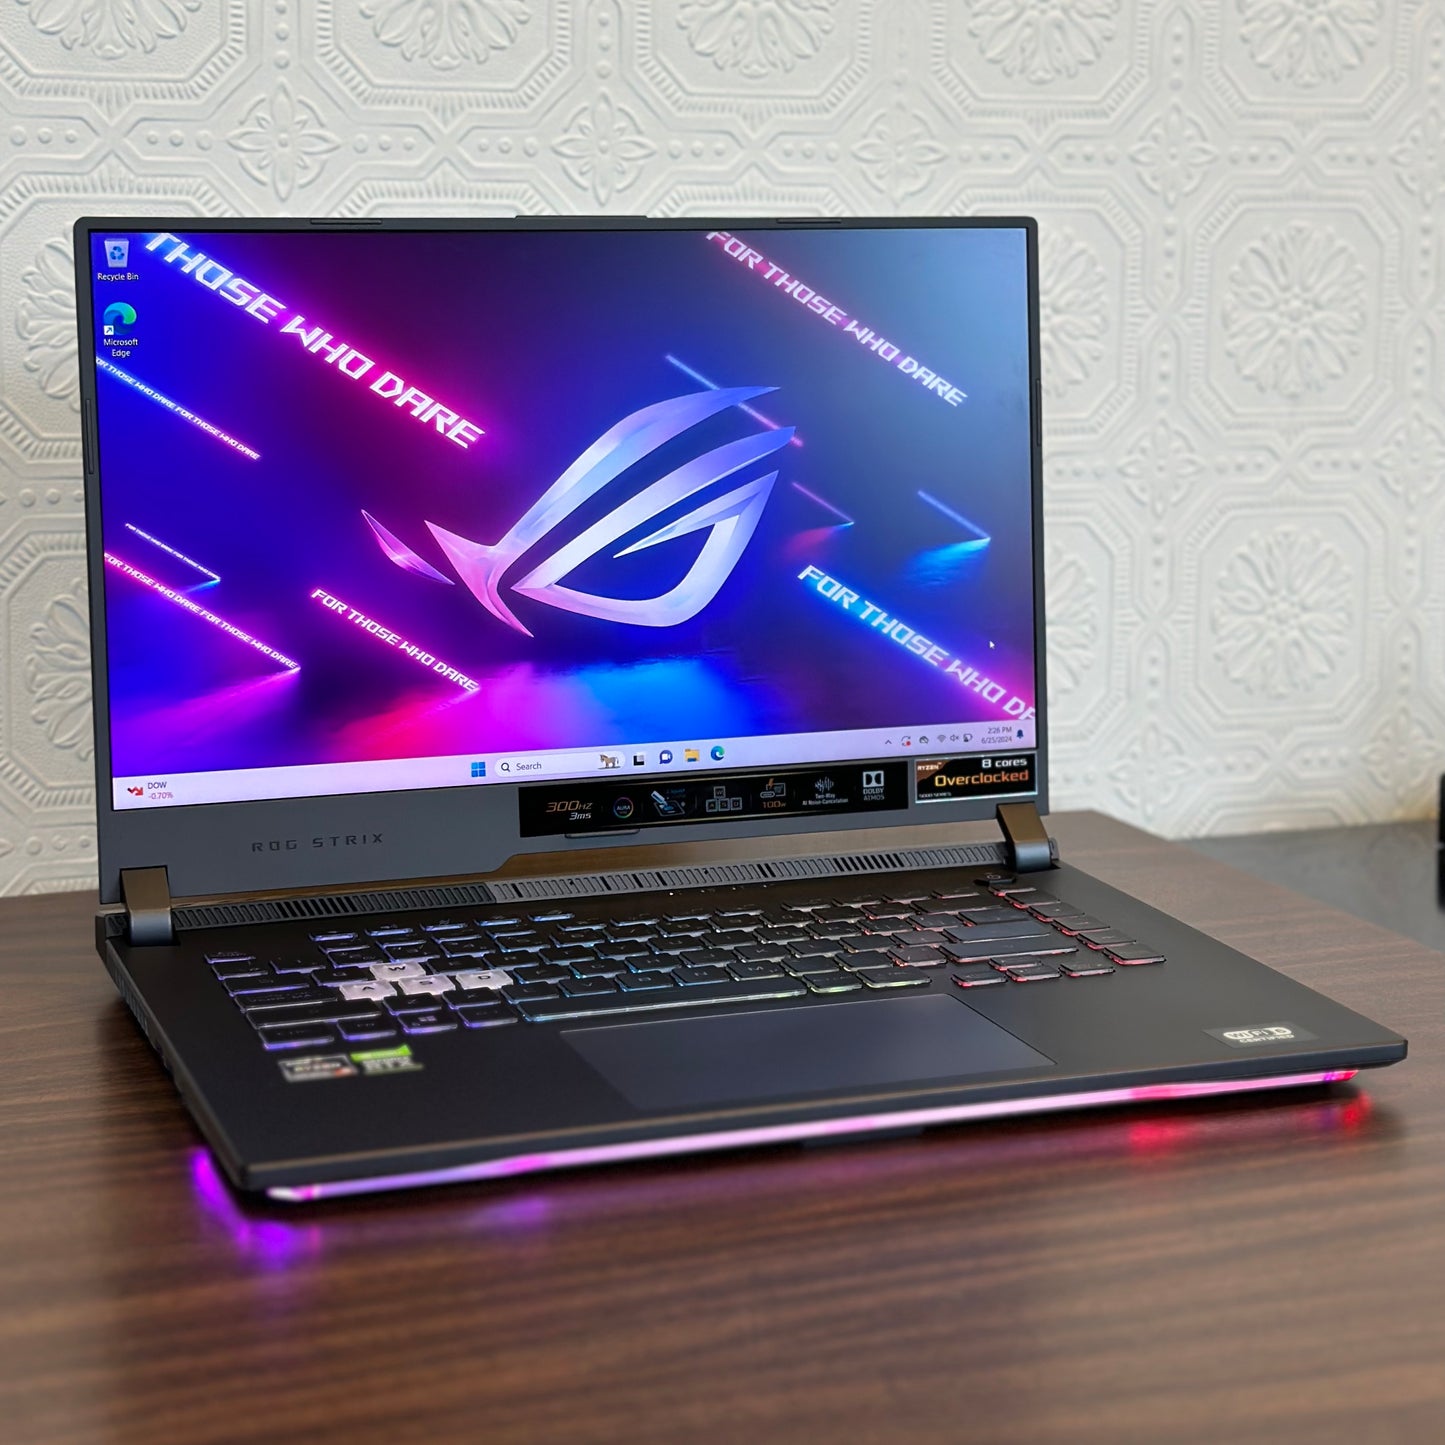 ASUS ROG STRIX G513 15.6" 300Hz 1080P Gaming Laptop - Re-Certified